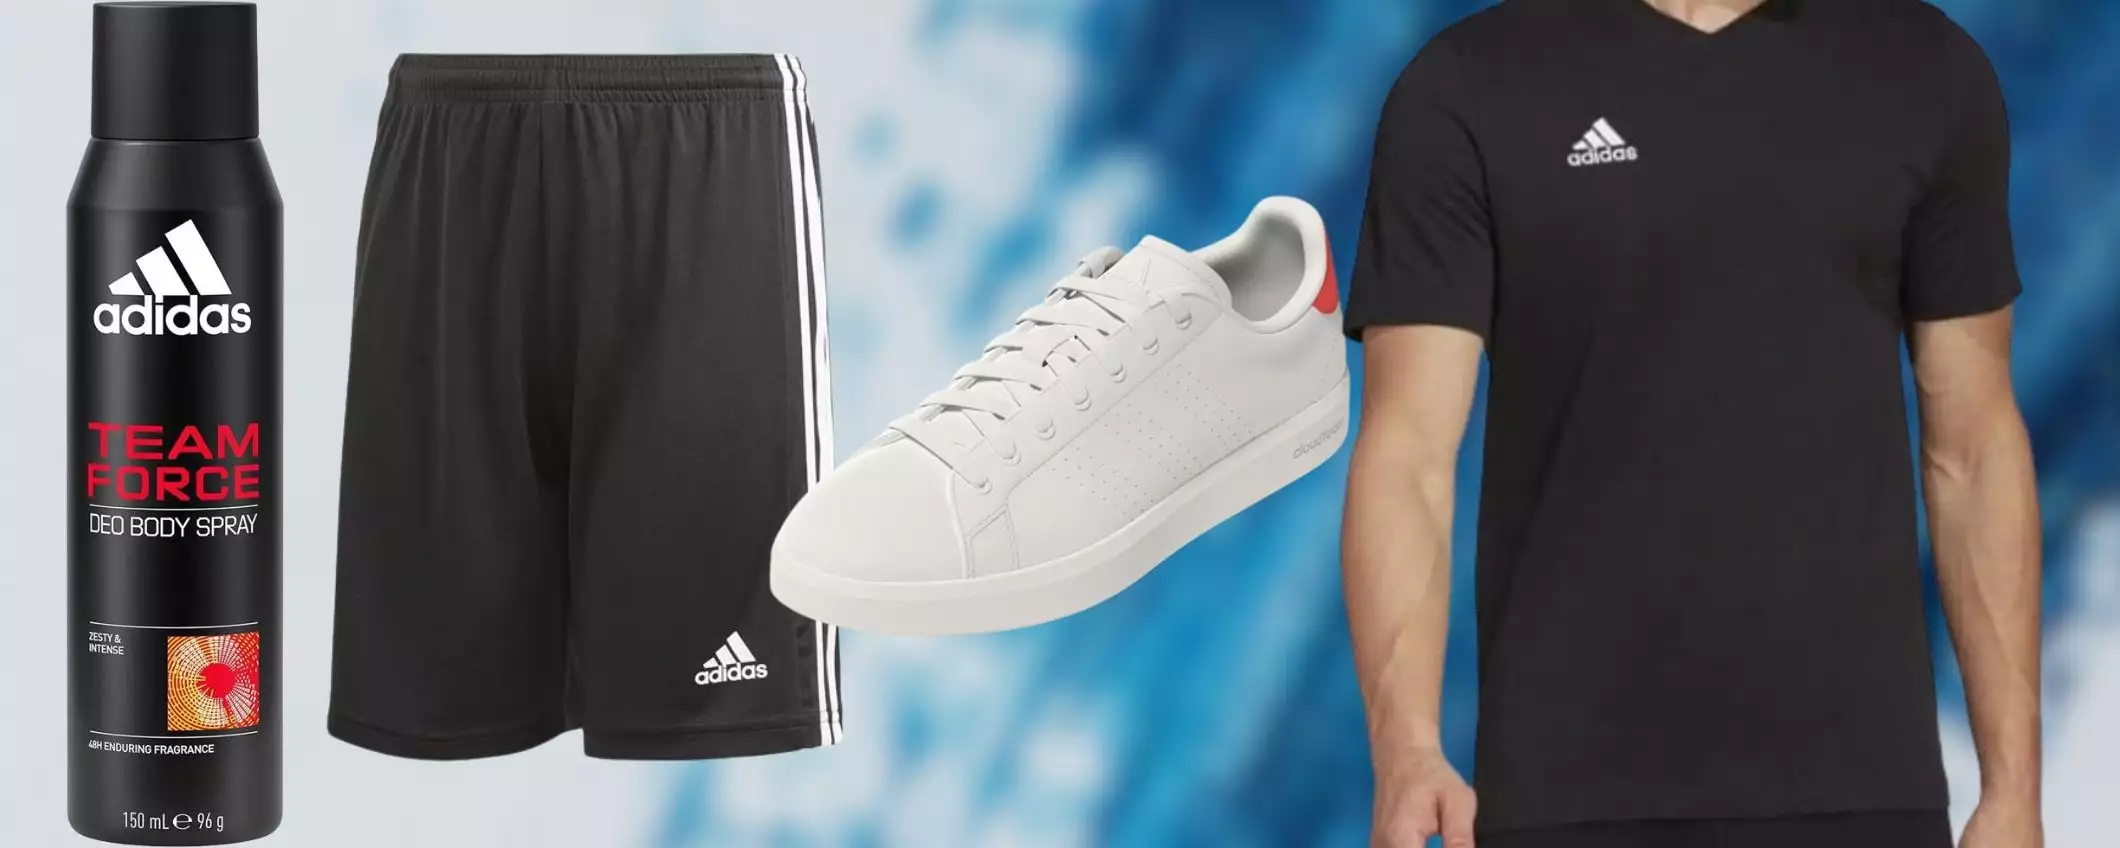 Adidas SVENDITA ESCLUSIVA su Amazon: tante offerte super a partire da 3,10€